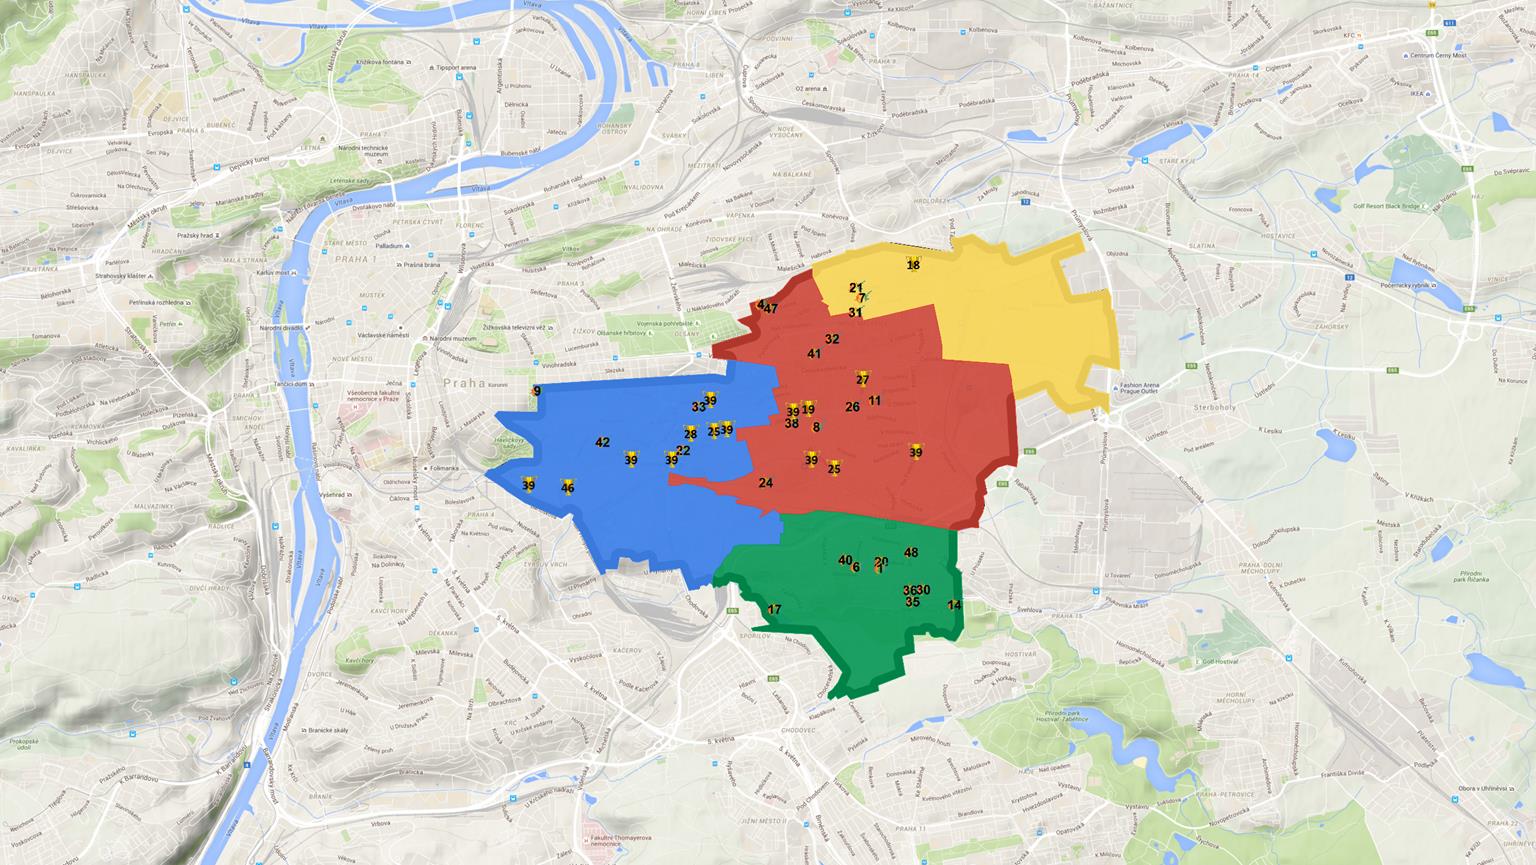 Výsledky - dle čtvrtí Lidé hlasovali velmi lokálně - na prvních čtyřech místech v každé čtvrti se umístily projekty z dané čtvrti městské části Praha 10, a následovali projekty z přilehlých čtvrtí.